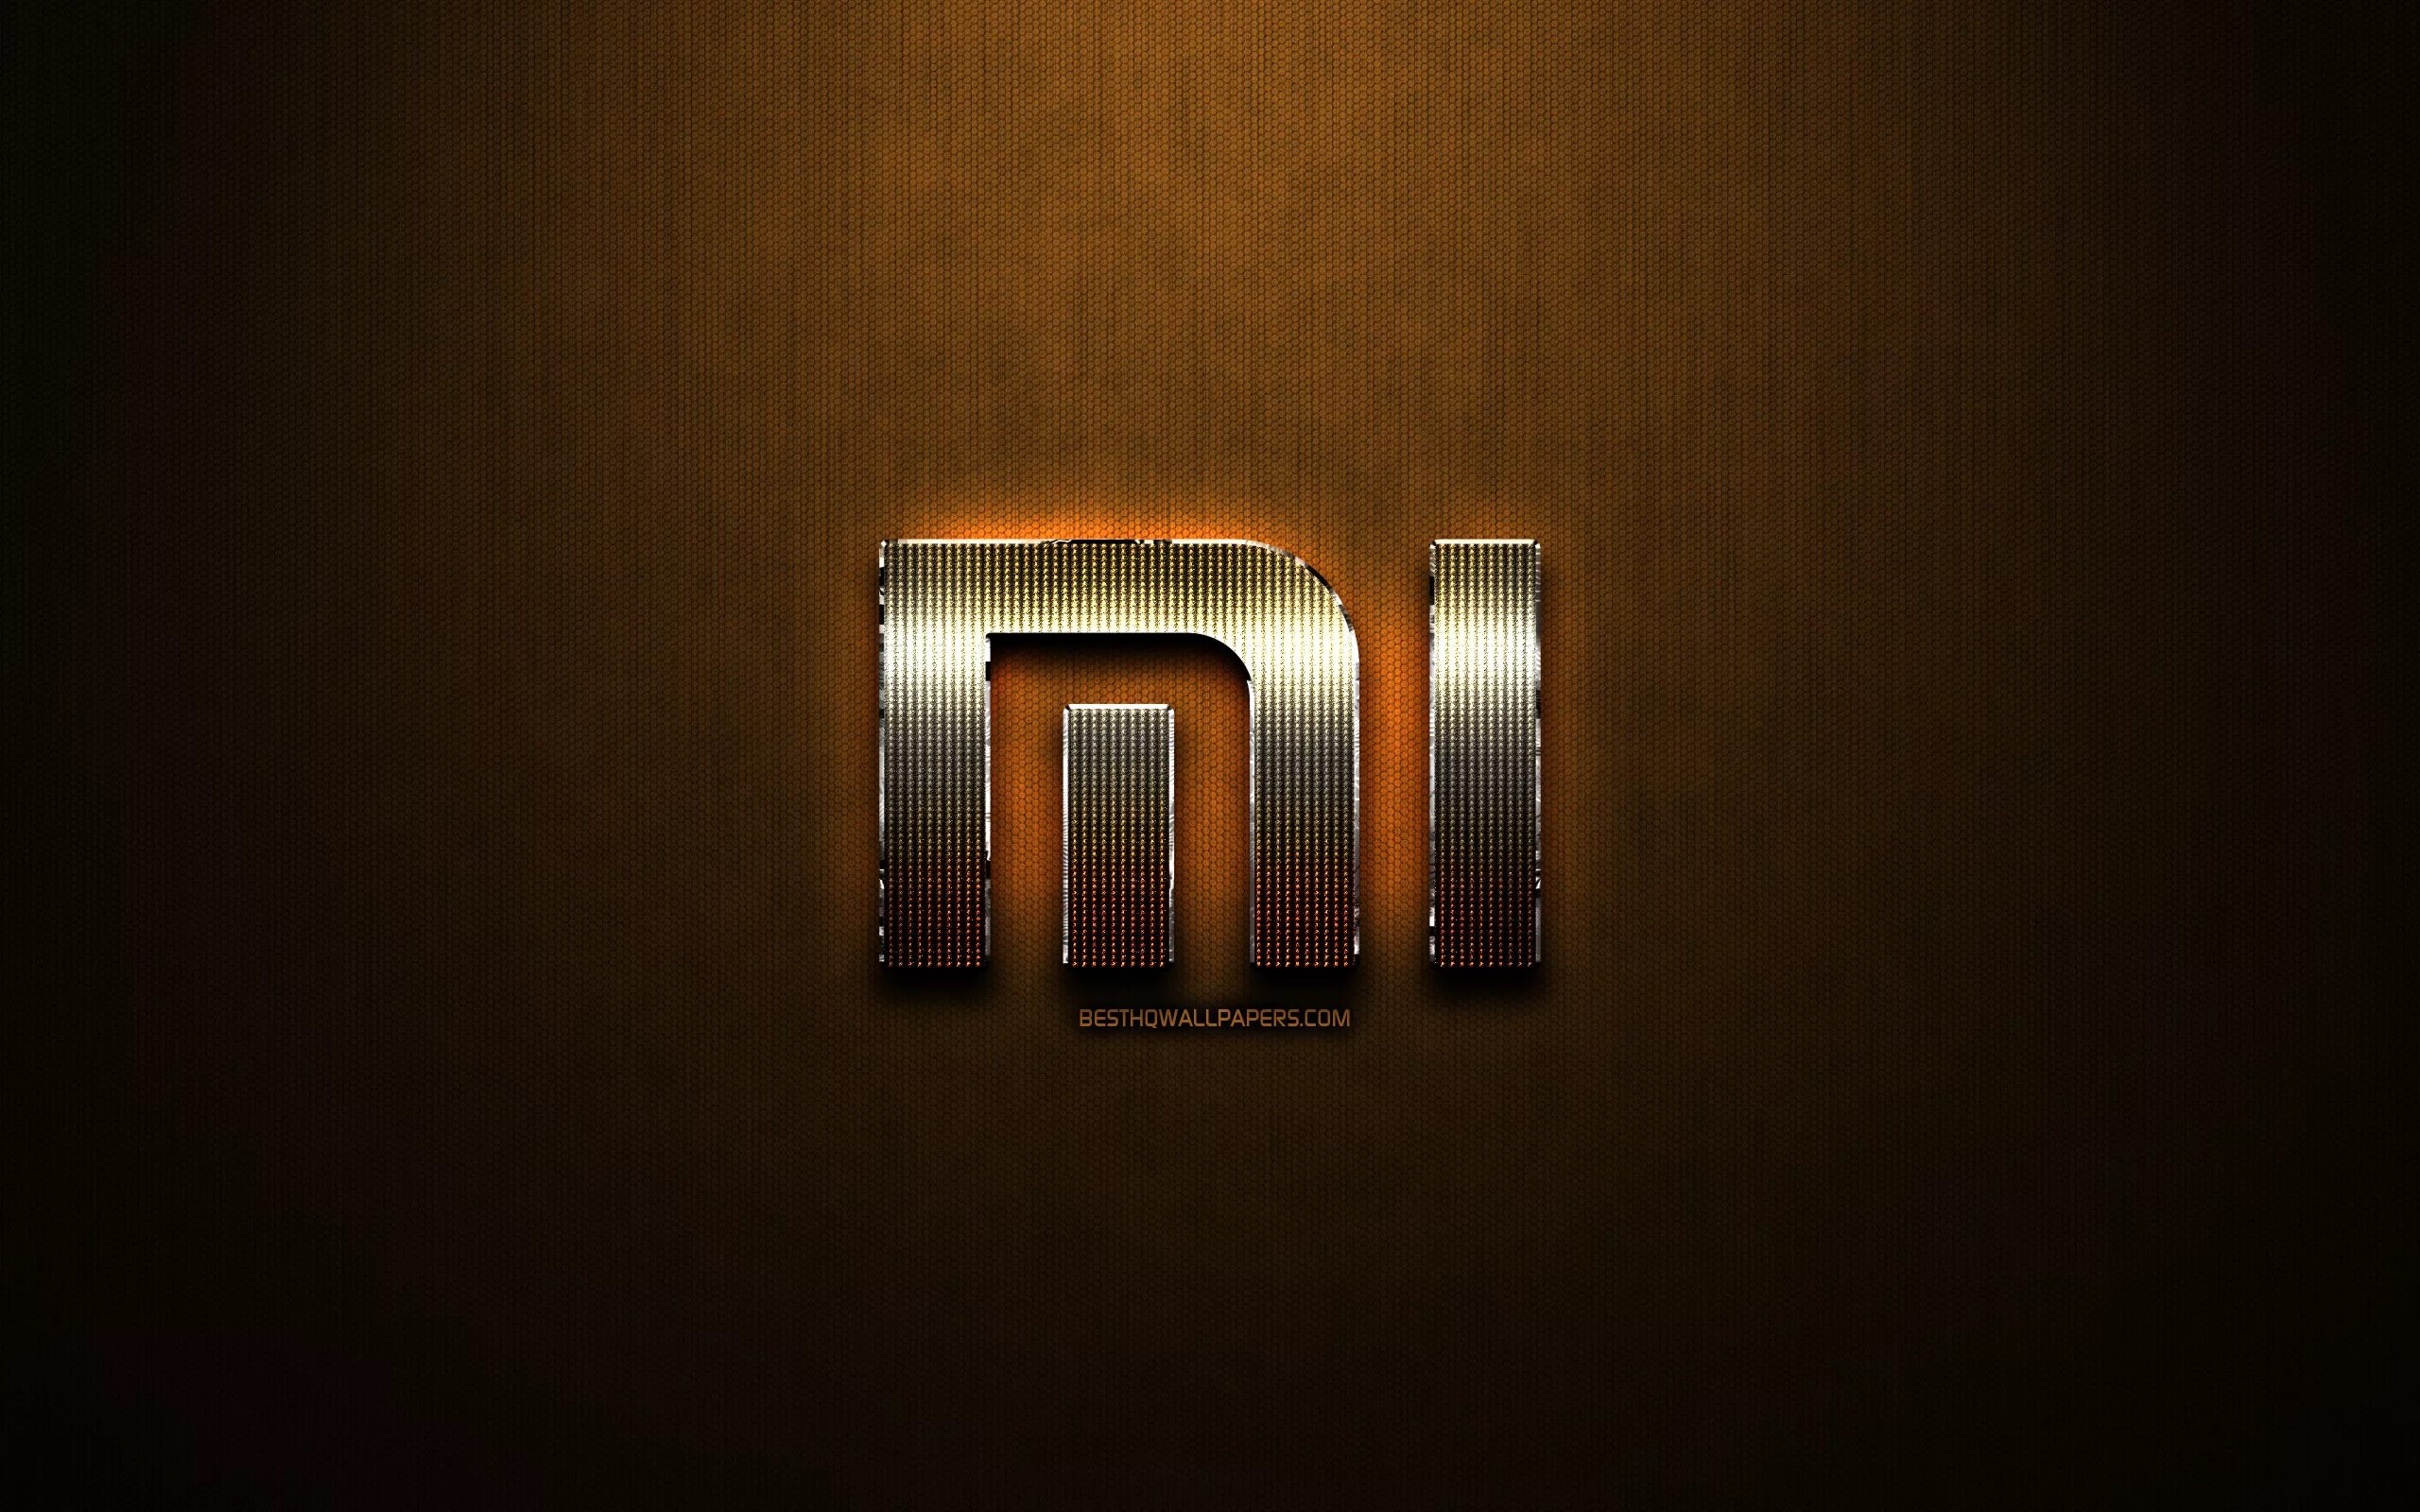 Mi gold. Логотип Xiaomi Redmi. Обои Xiaomi. Обои с логотипом mi. Обои с логотипом Xiaomi.